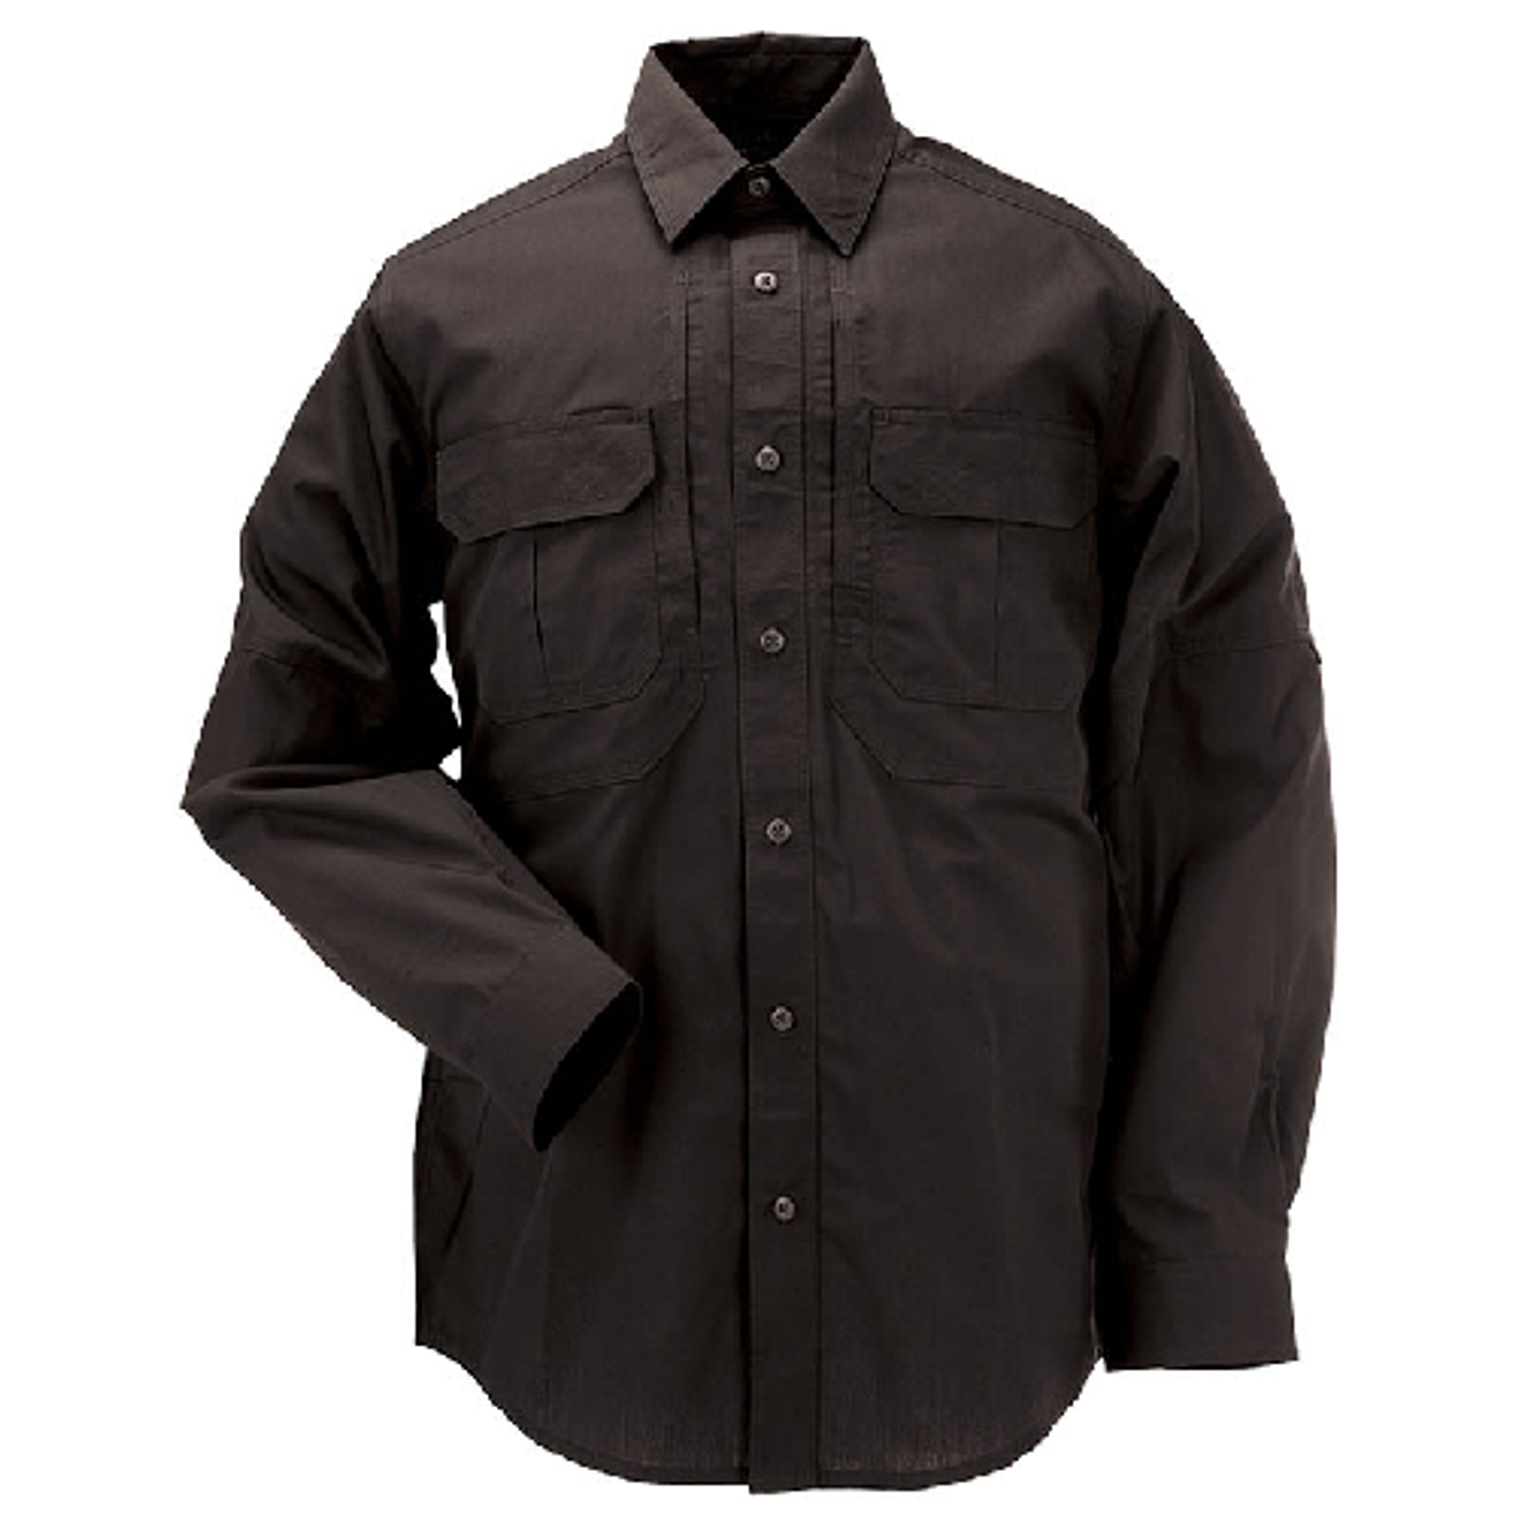 Taclite Pro L/s Shirt - KR5-721750192X